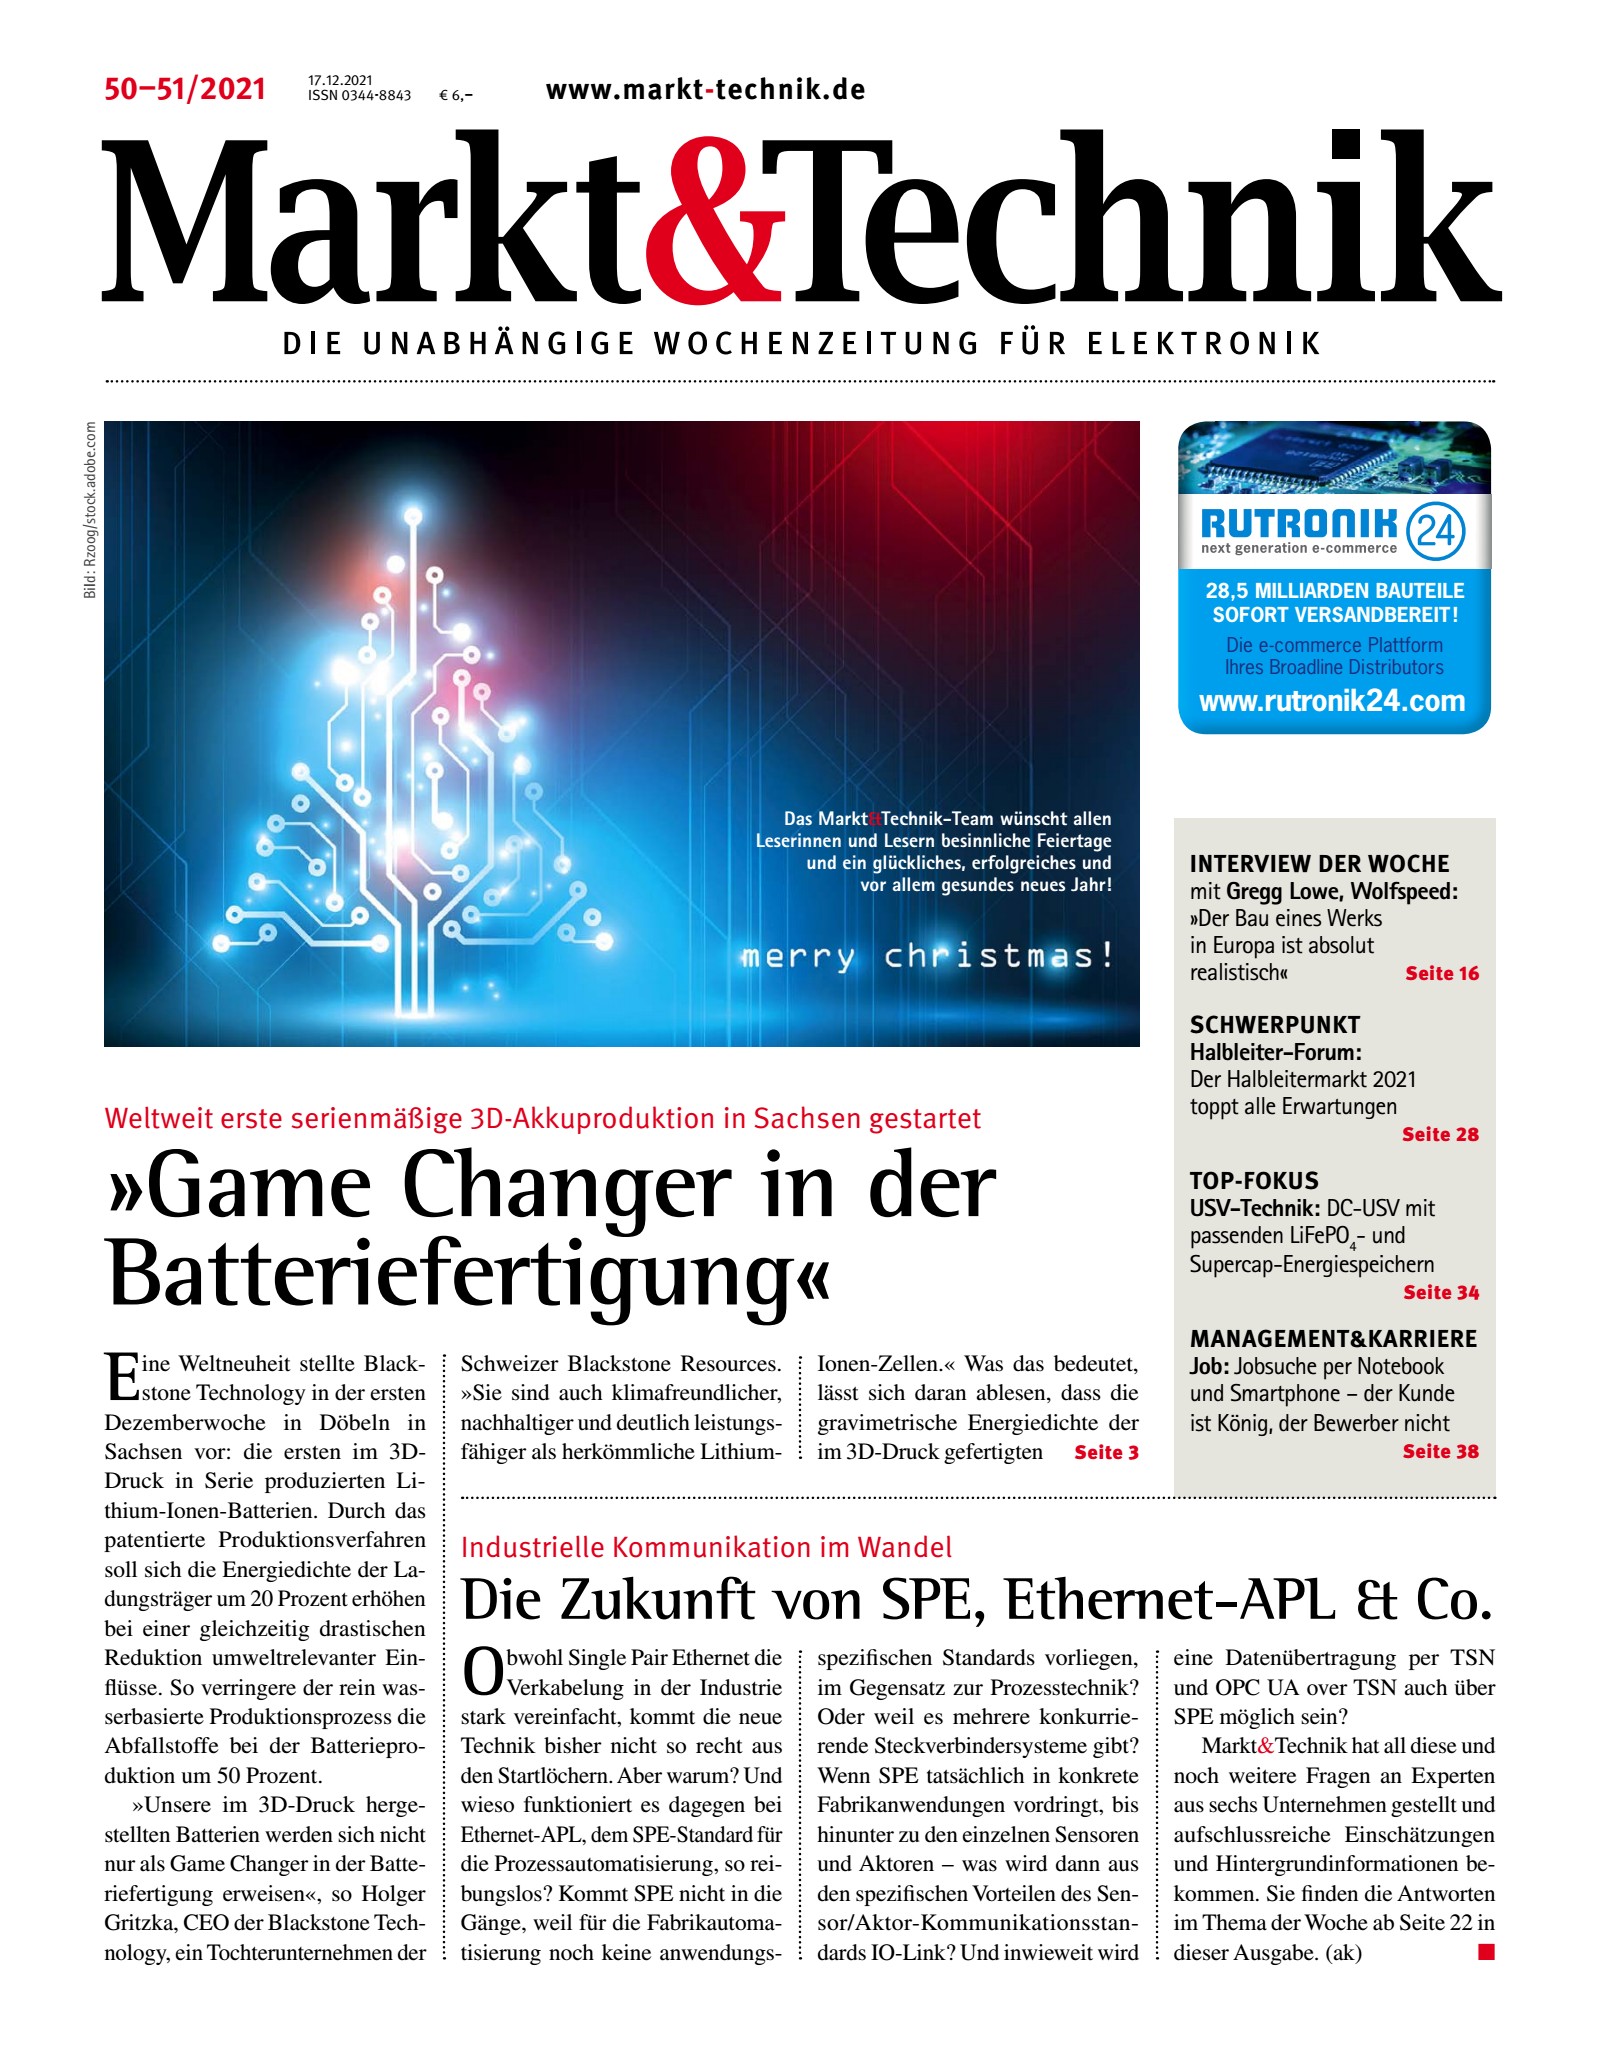 Markt&Technik 50-51/2021 Digital